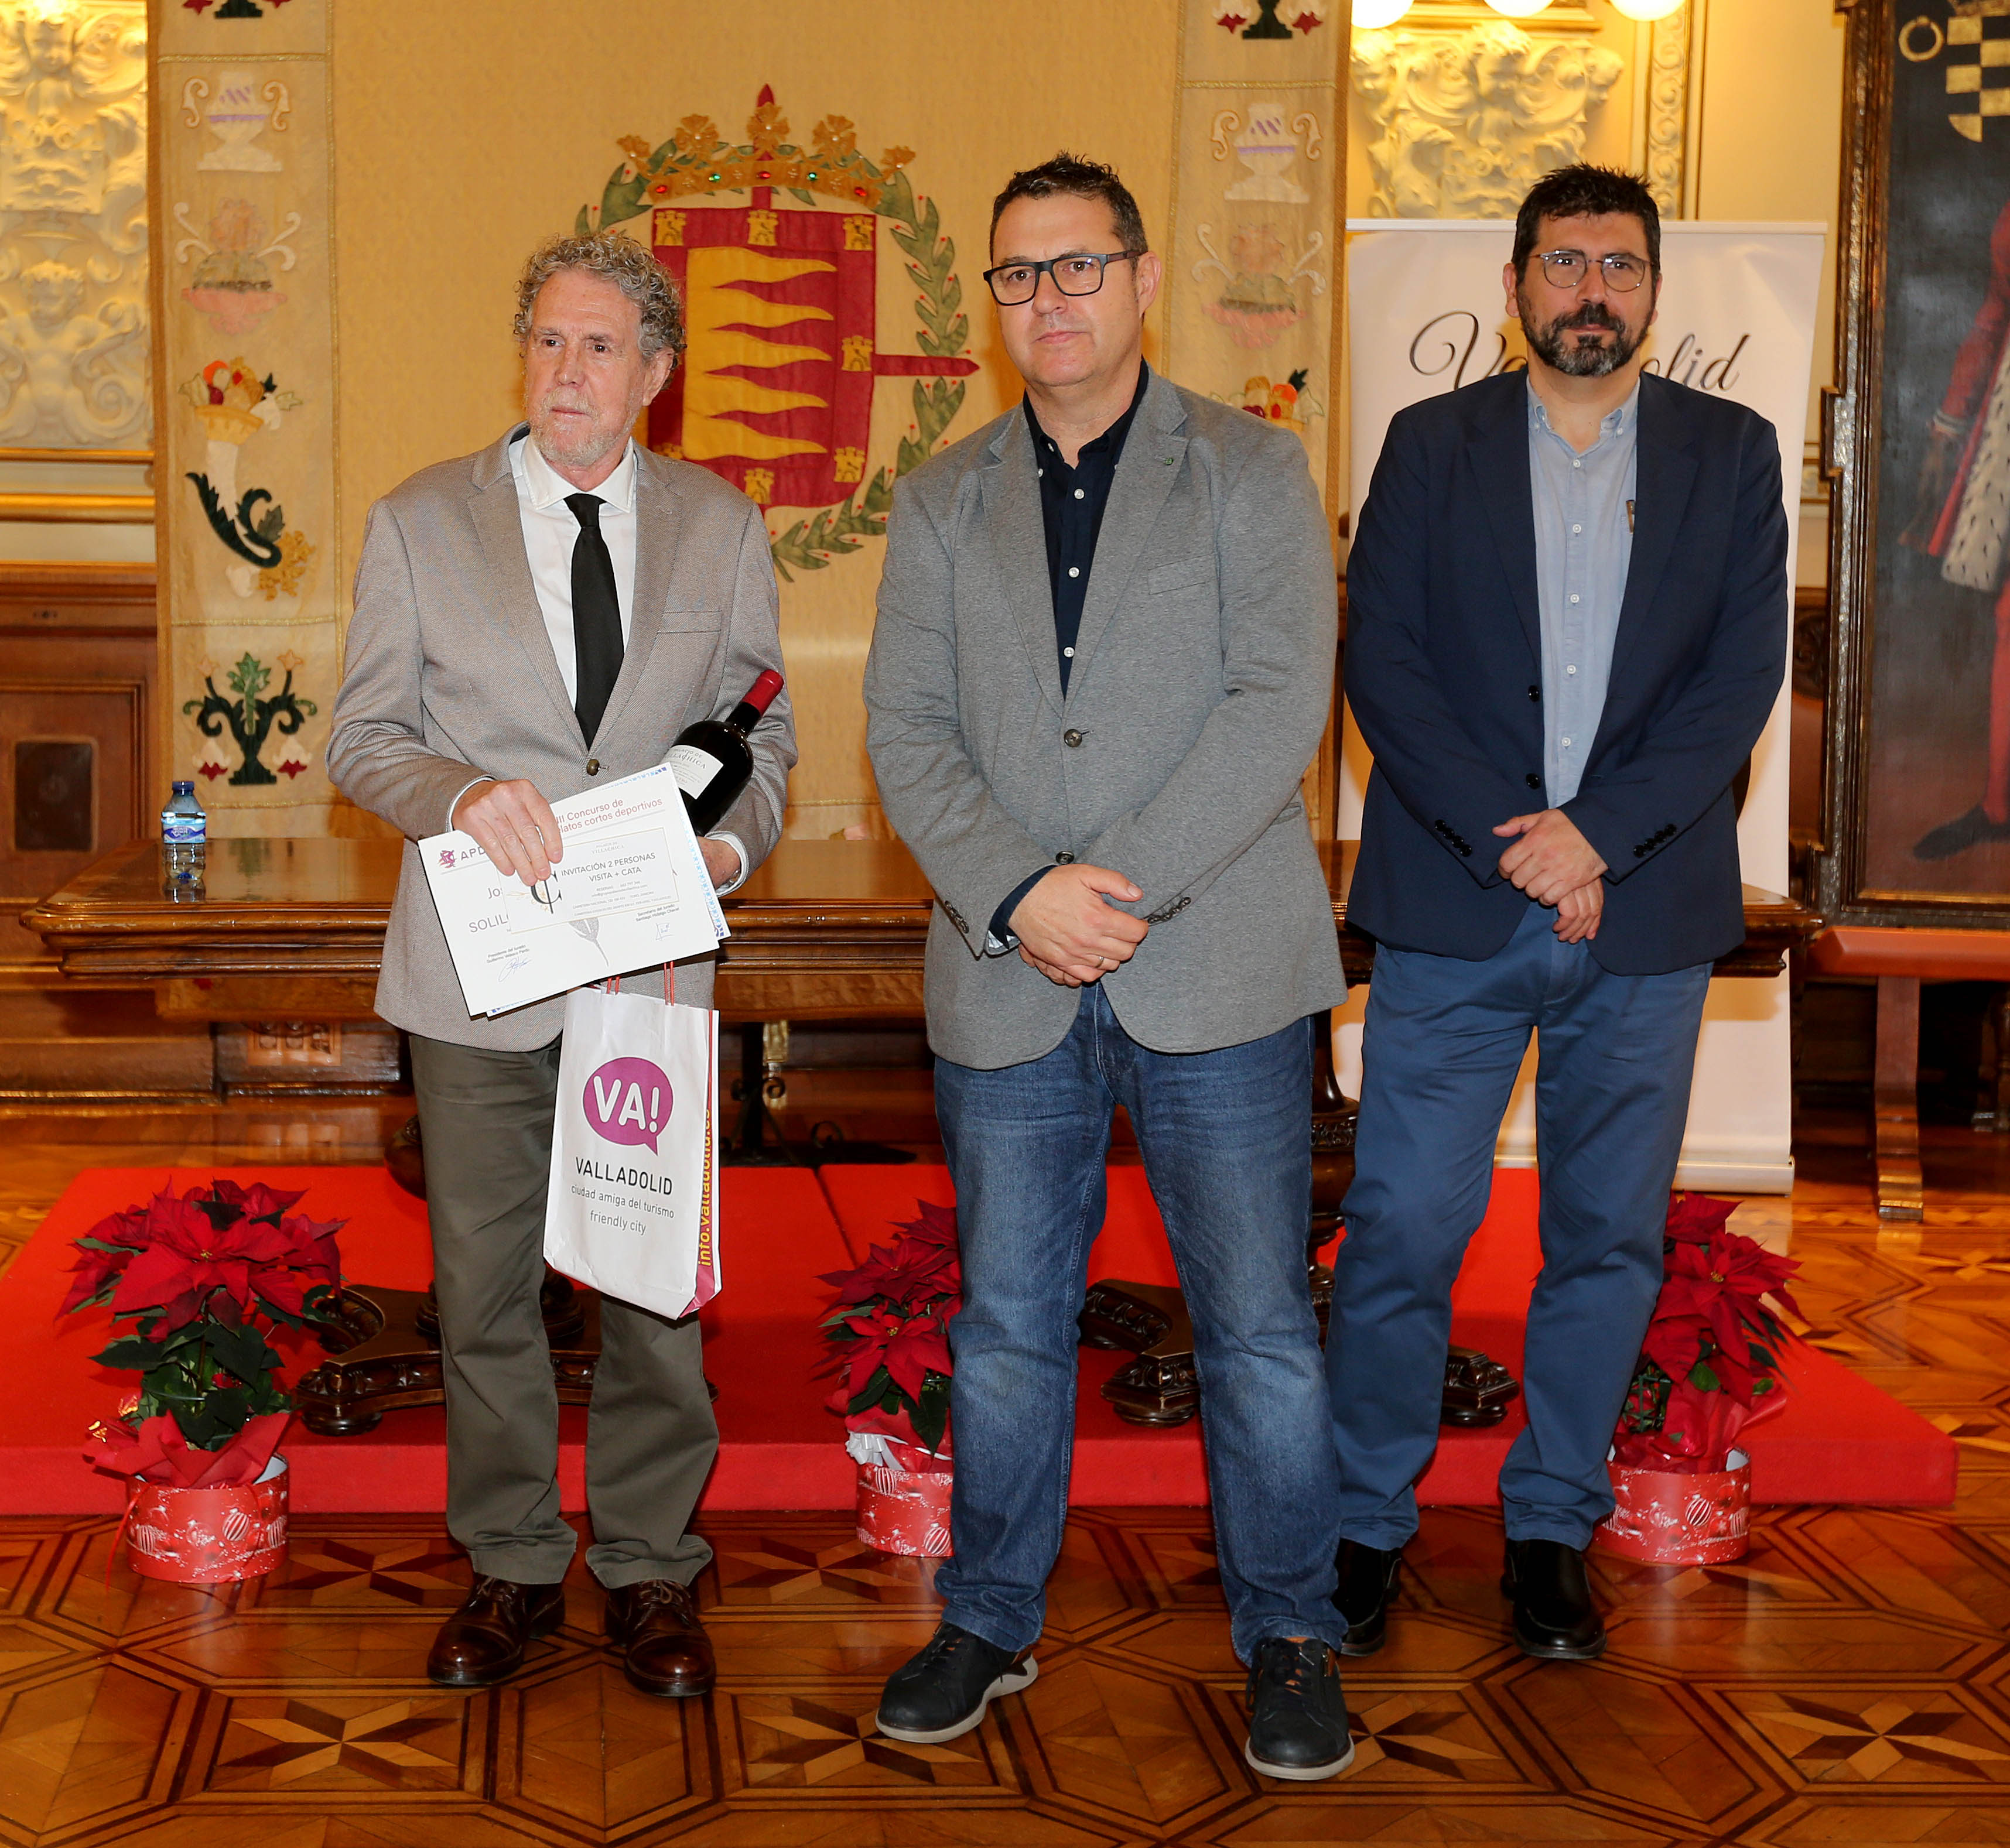 2º Premio José Luis Bragado García entrega el premio Guillermo Velasco, Presidente de la Asociación de la Prensa Deportiva de Valladolid